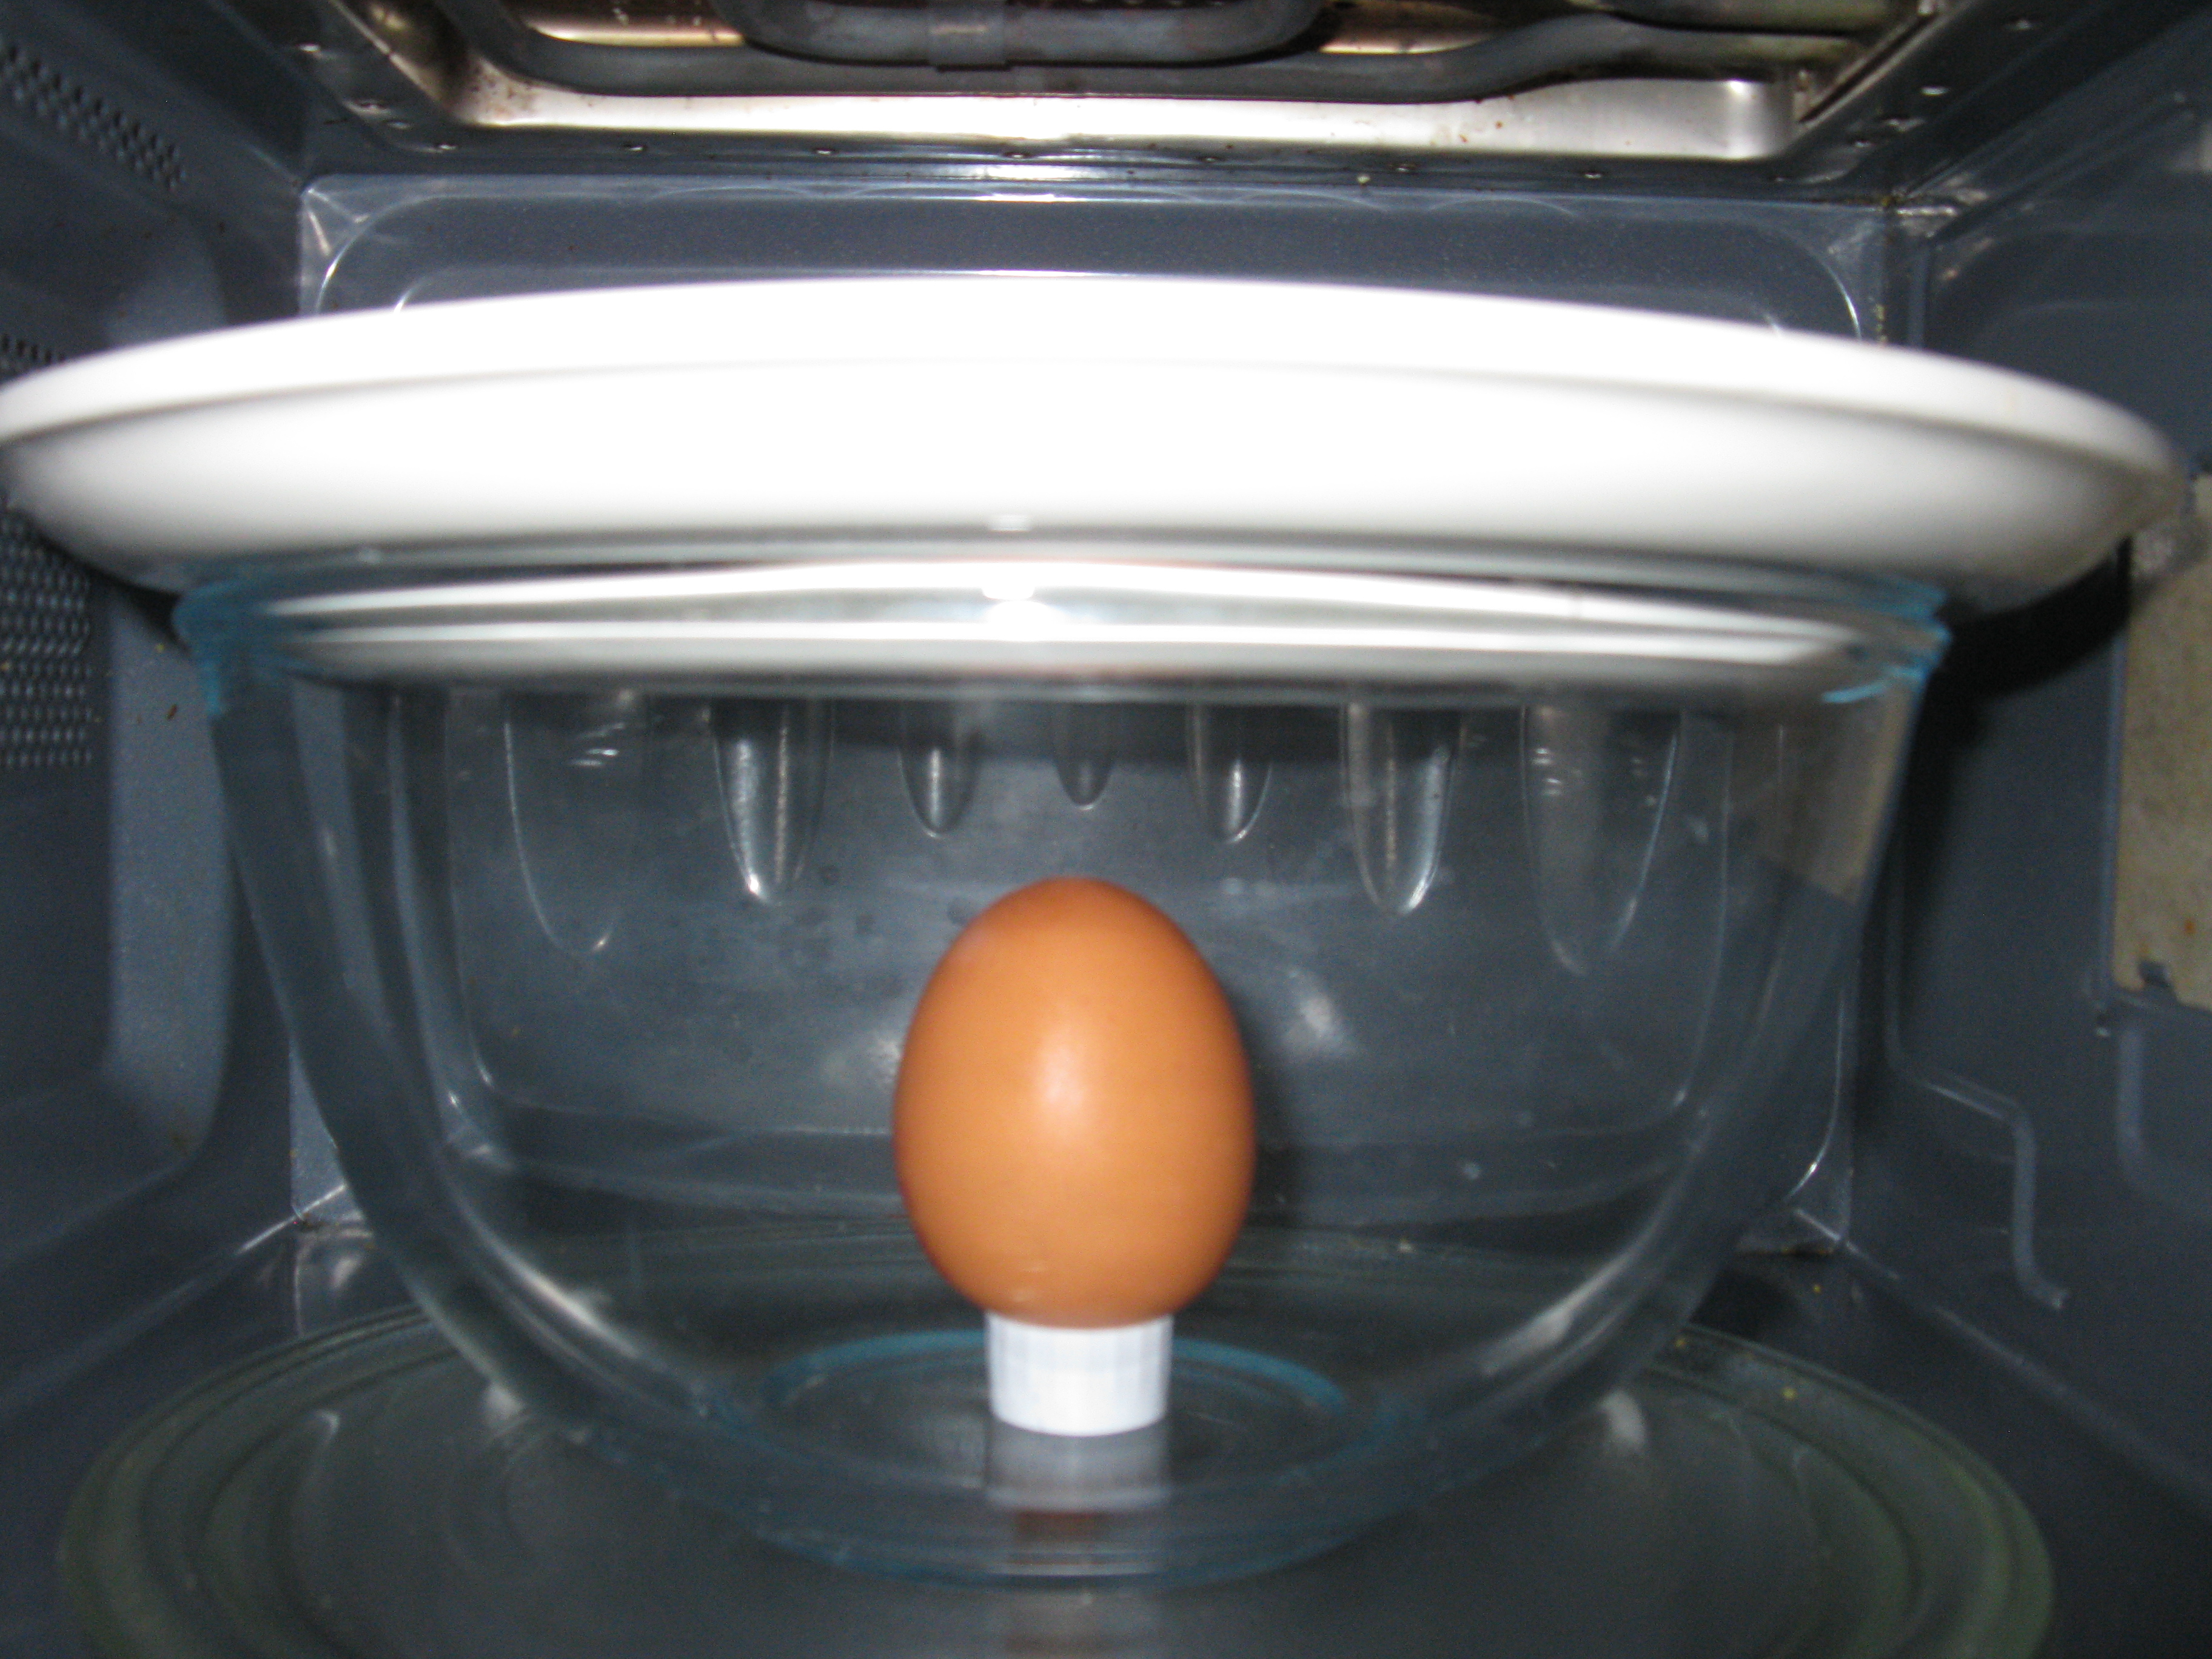 Peut-on cuire un œuf dans un four à micro-ondes ? - Question de